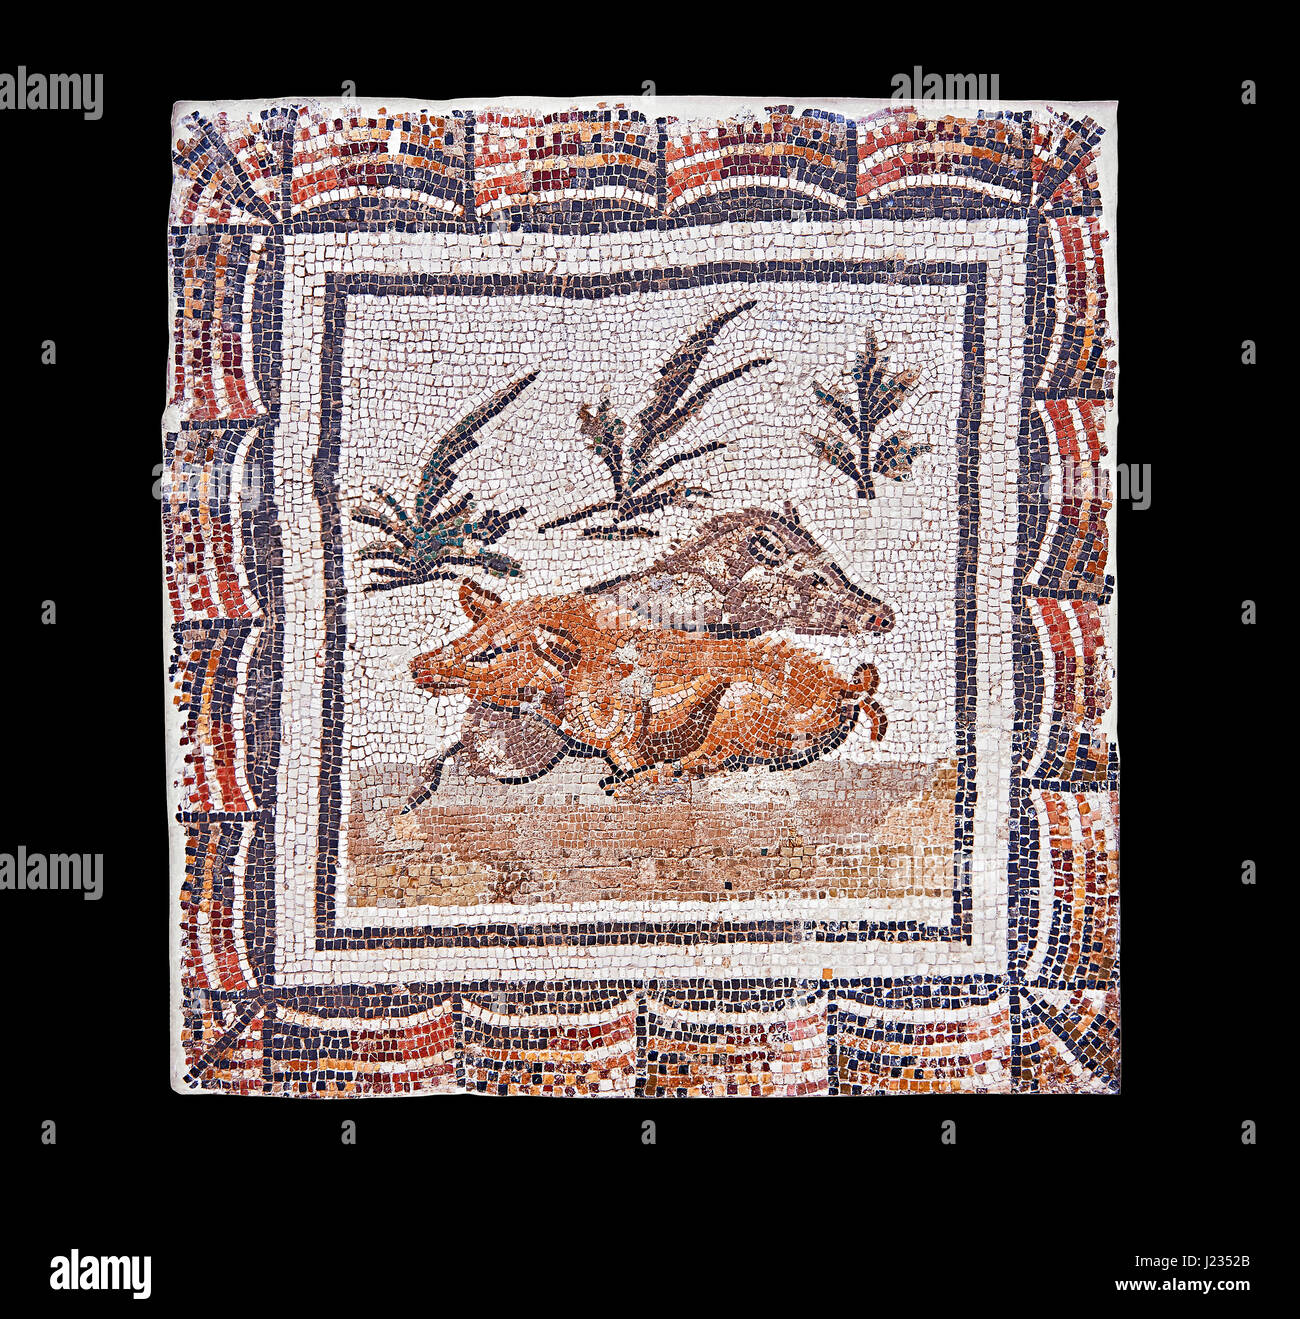 3e siècle mosaïque romaine avant d'un verrat et une truie couchée. De Thysdrus (El Jem), Tunisie. Le Musée du Bardo, Tunis, Tunisie. Fond noir Banque D'Images